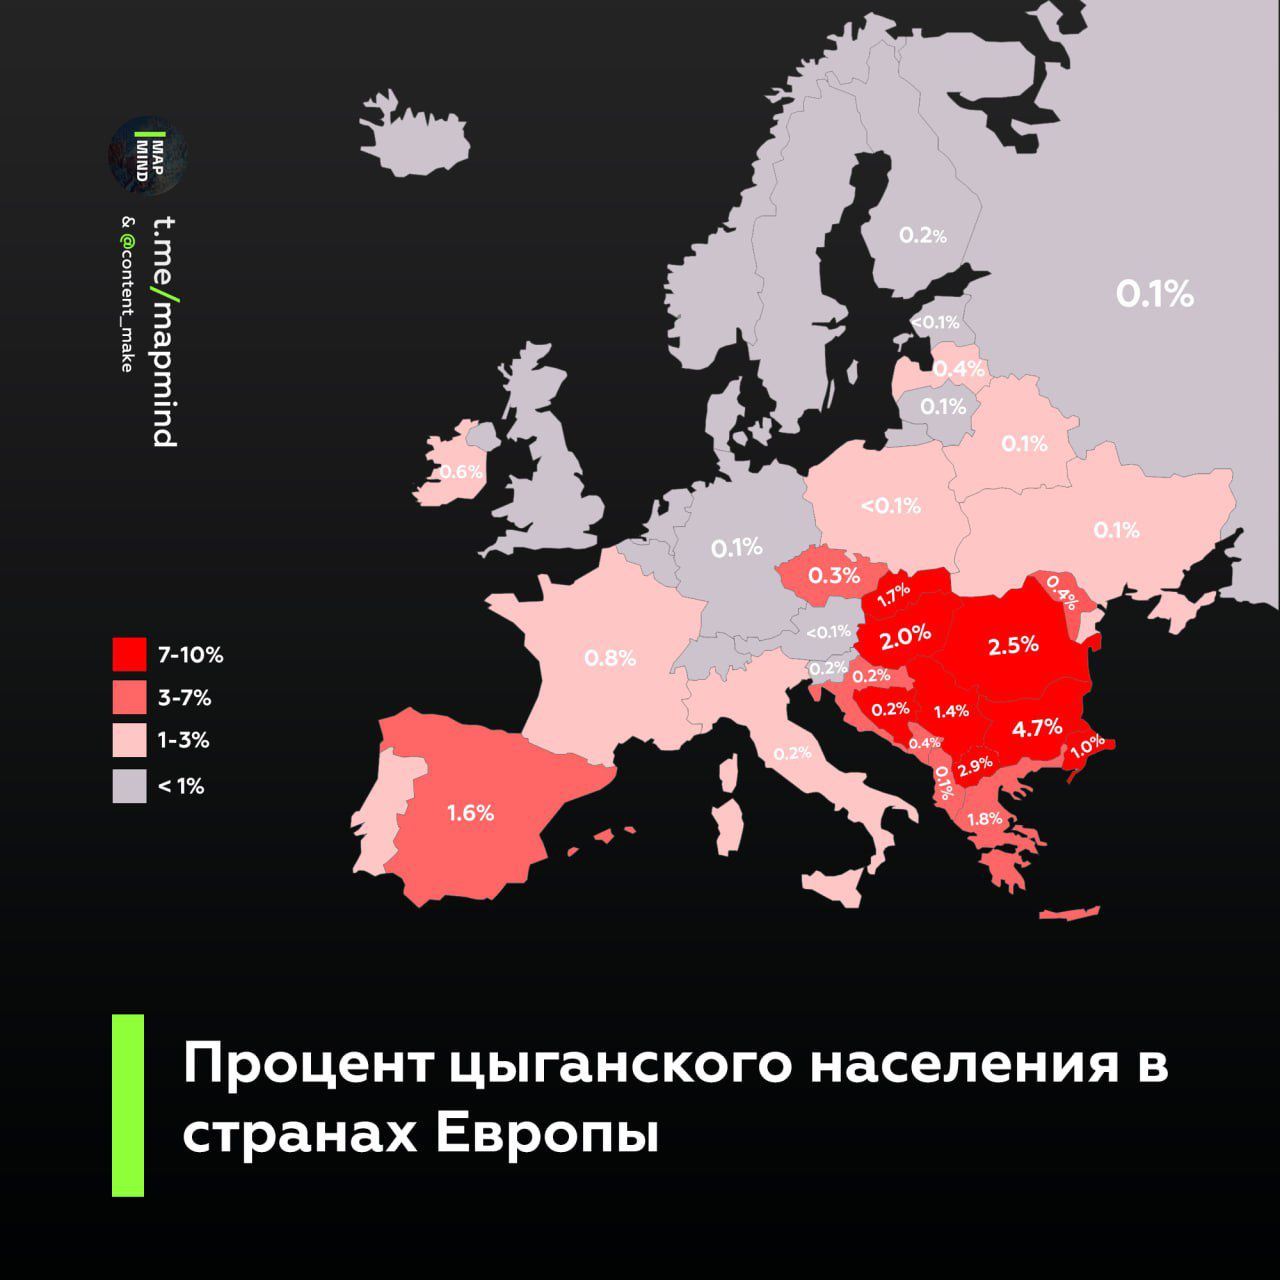 ршшаешашч _ 171 Процент ЦЫГЗНСКОГО населения В странах Европы